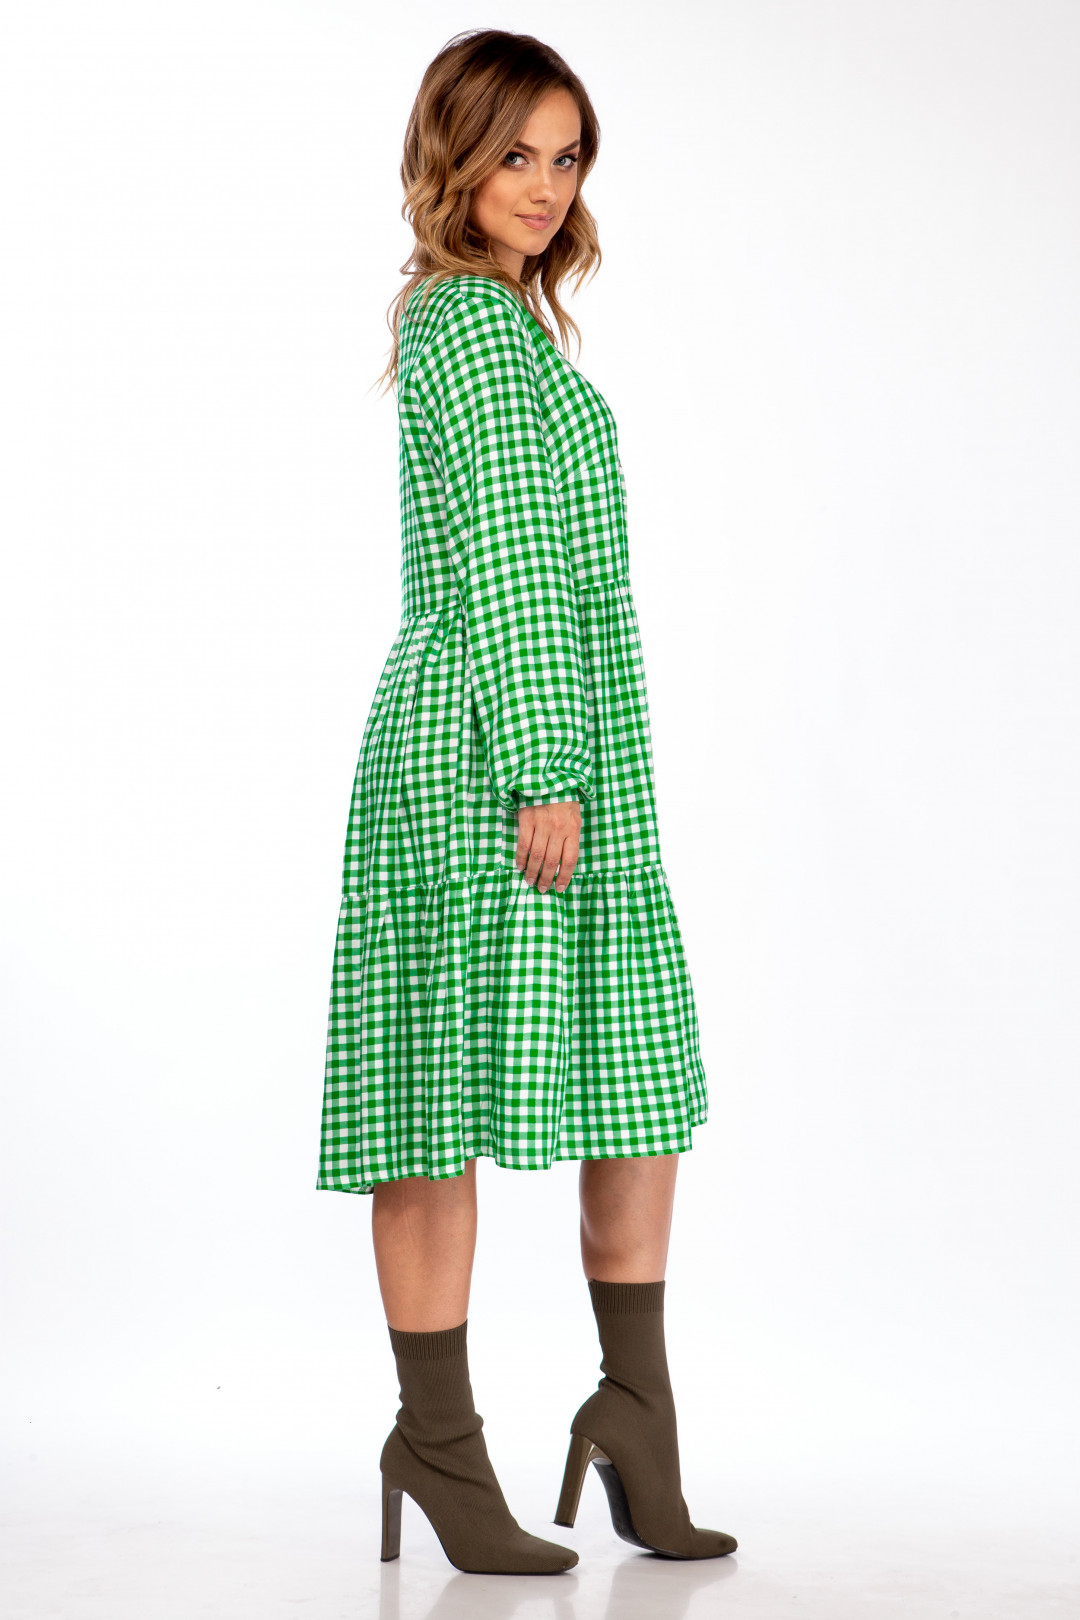 Платье Мишель Шик 2107 зеленый, клетка